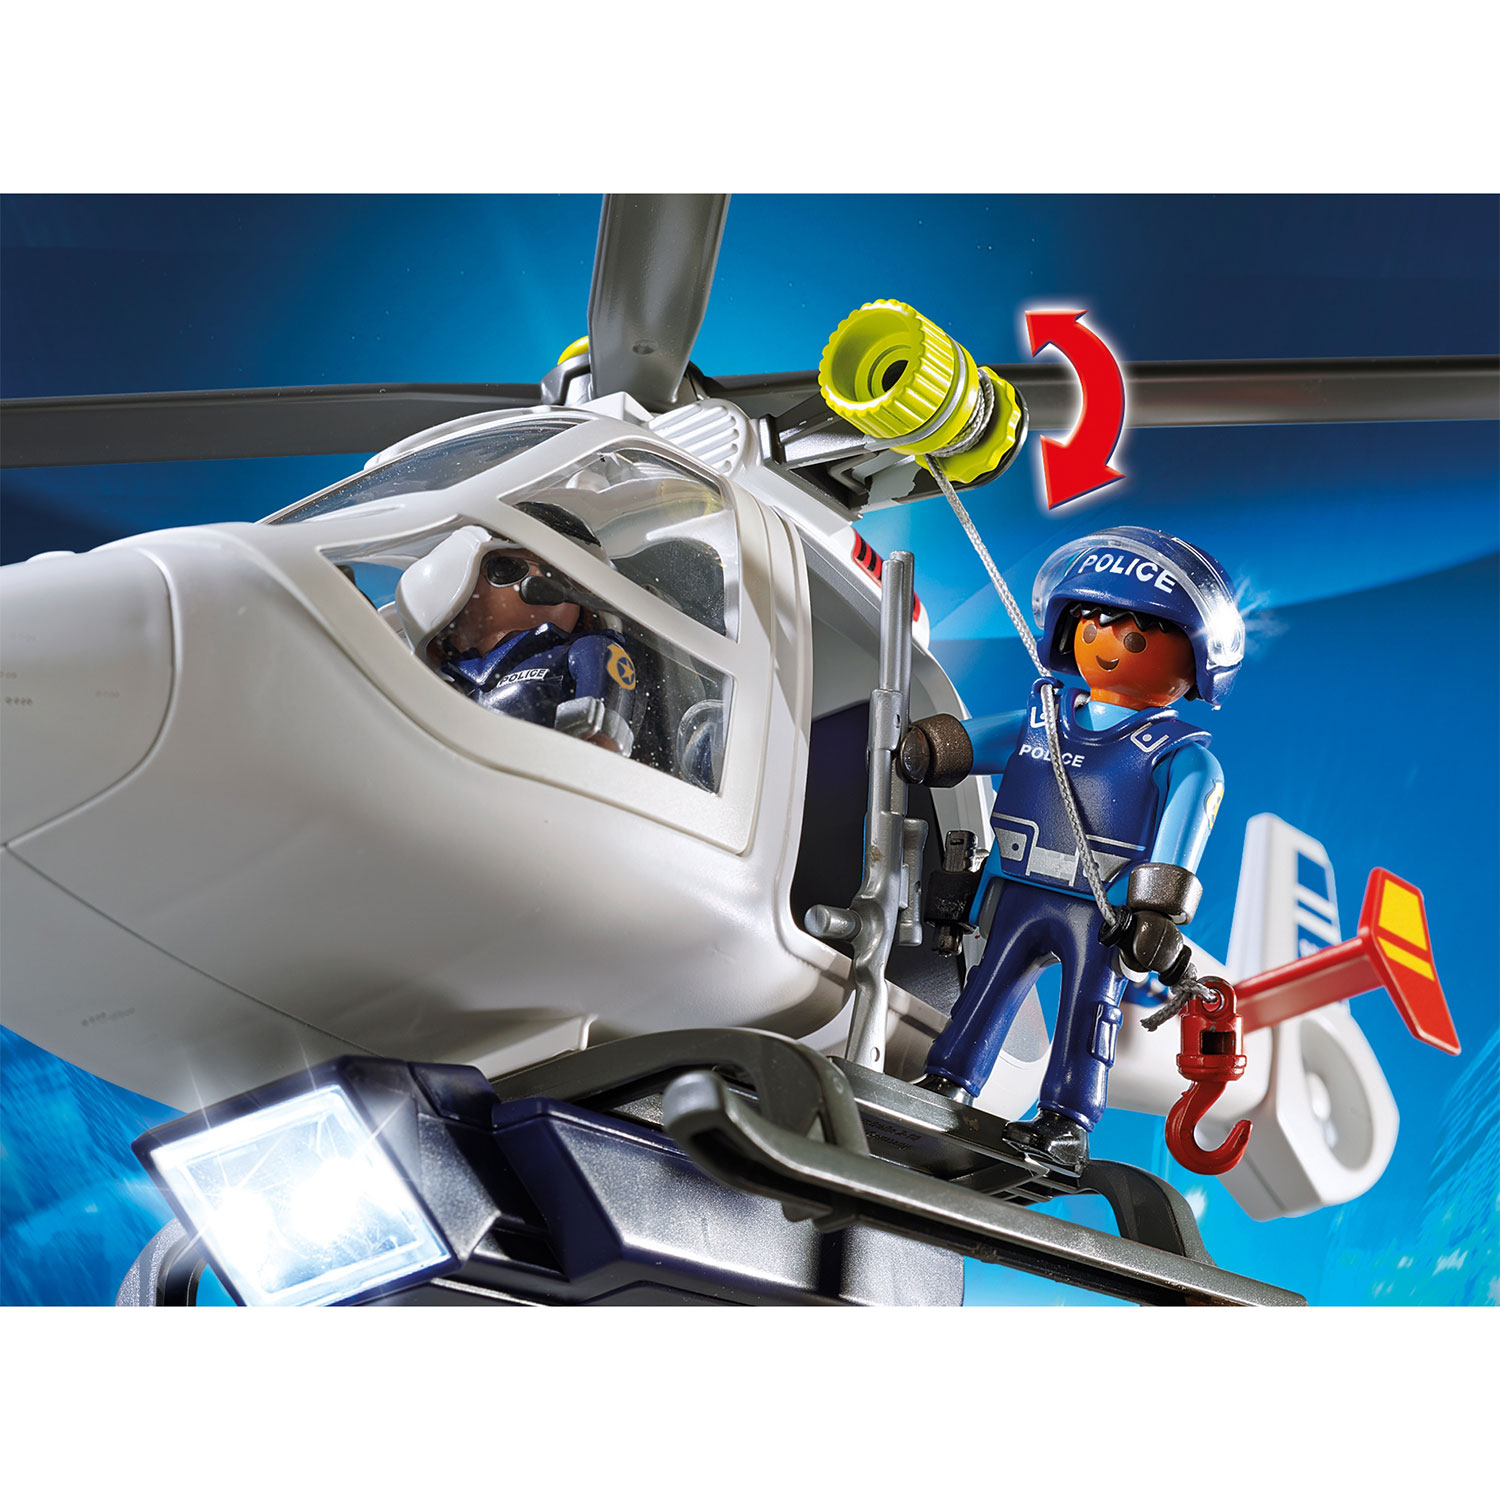 Playmobil 6921 Politiehelikopter met LED-zoeklicht